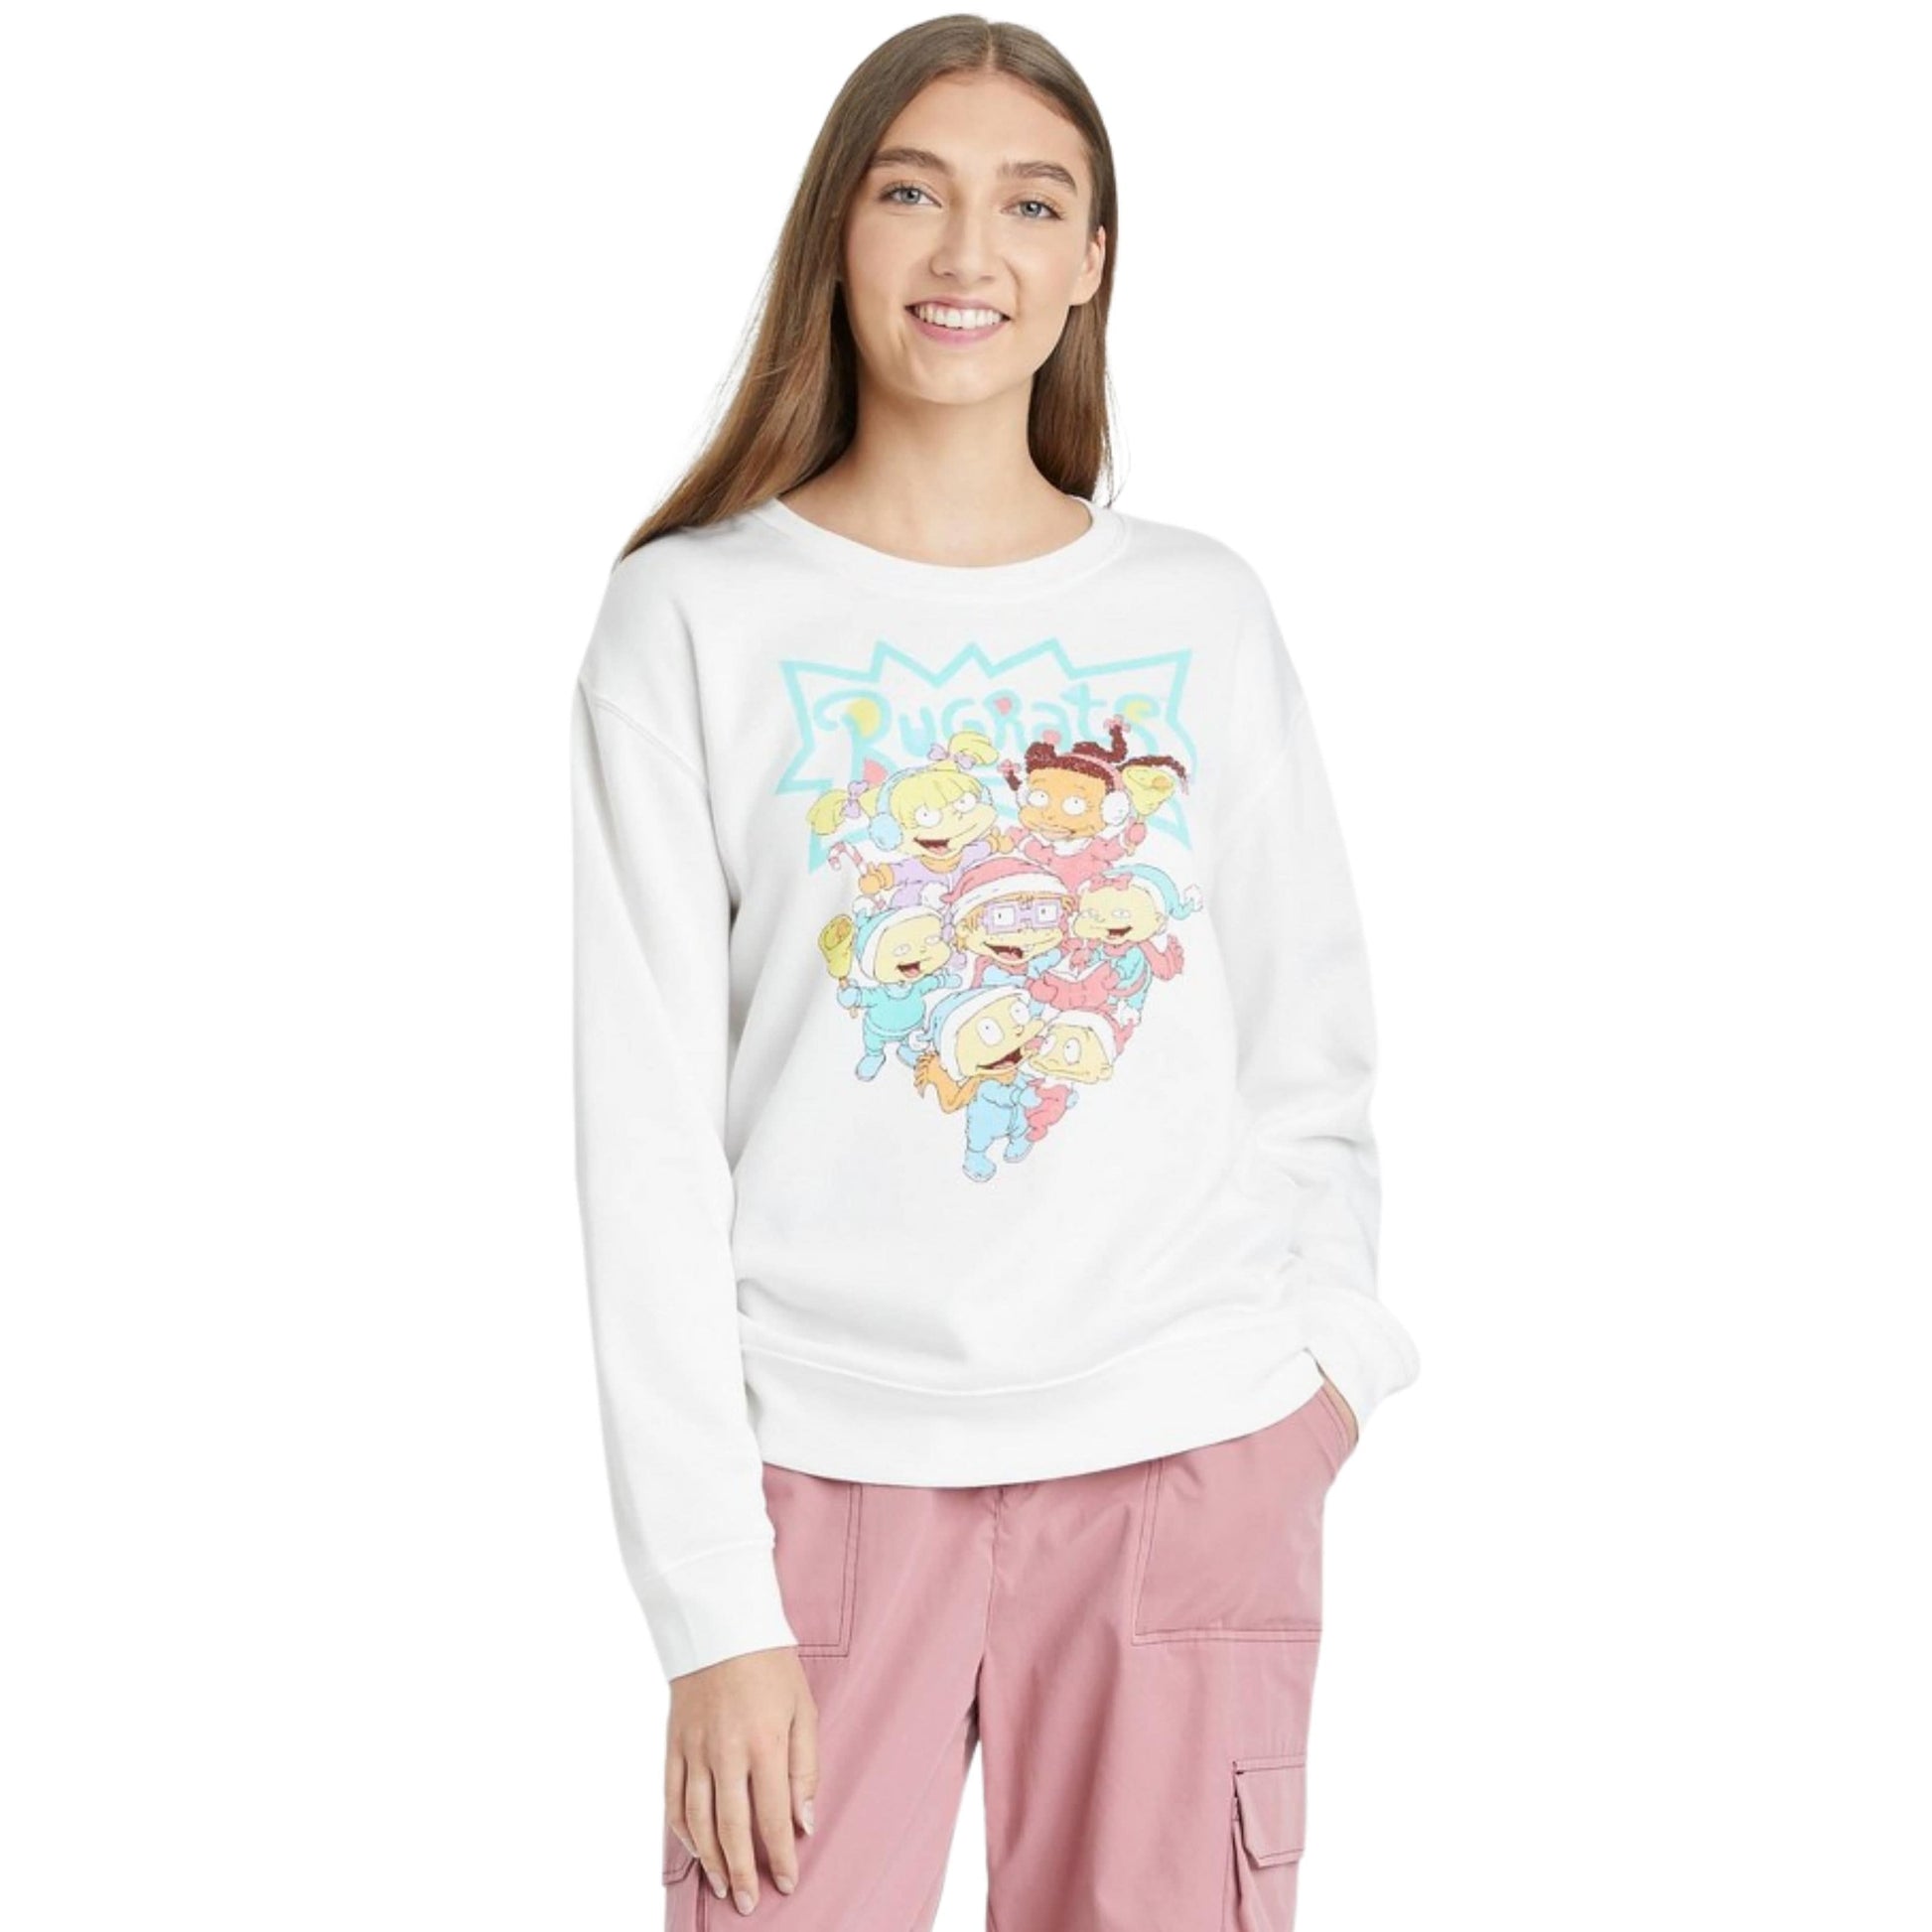 NICKELODEON Womens Tops M / White NICKELODEON - Holiday Rugrats Graphic Sweatshirt